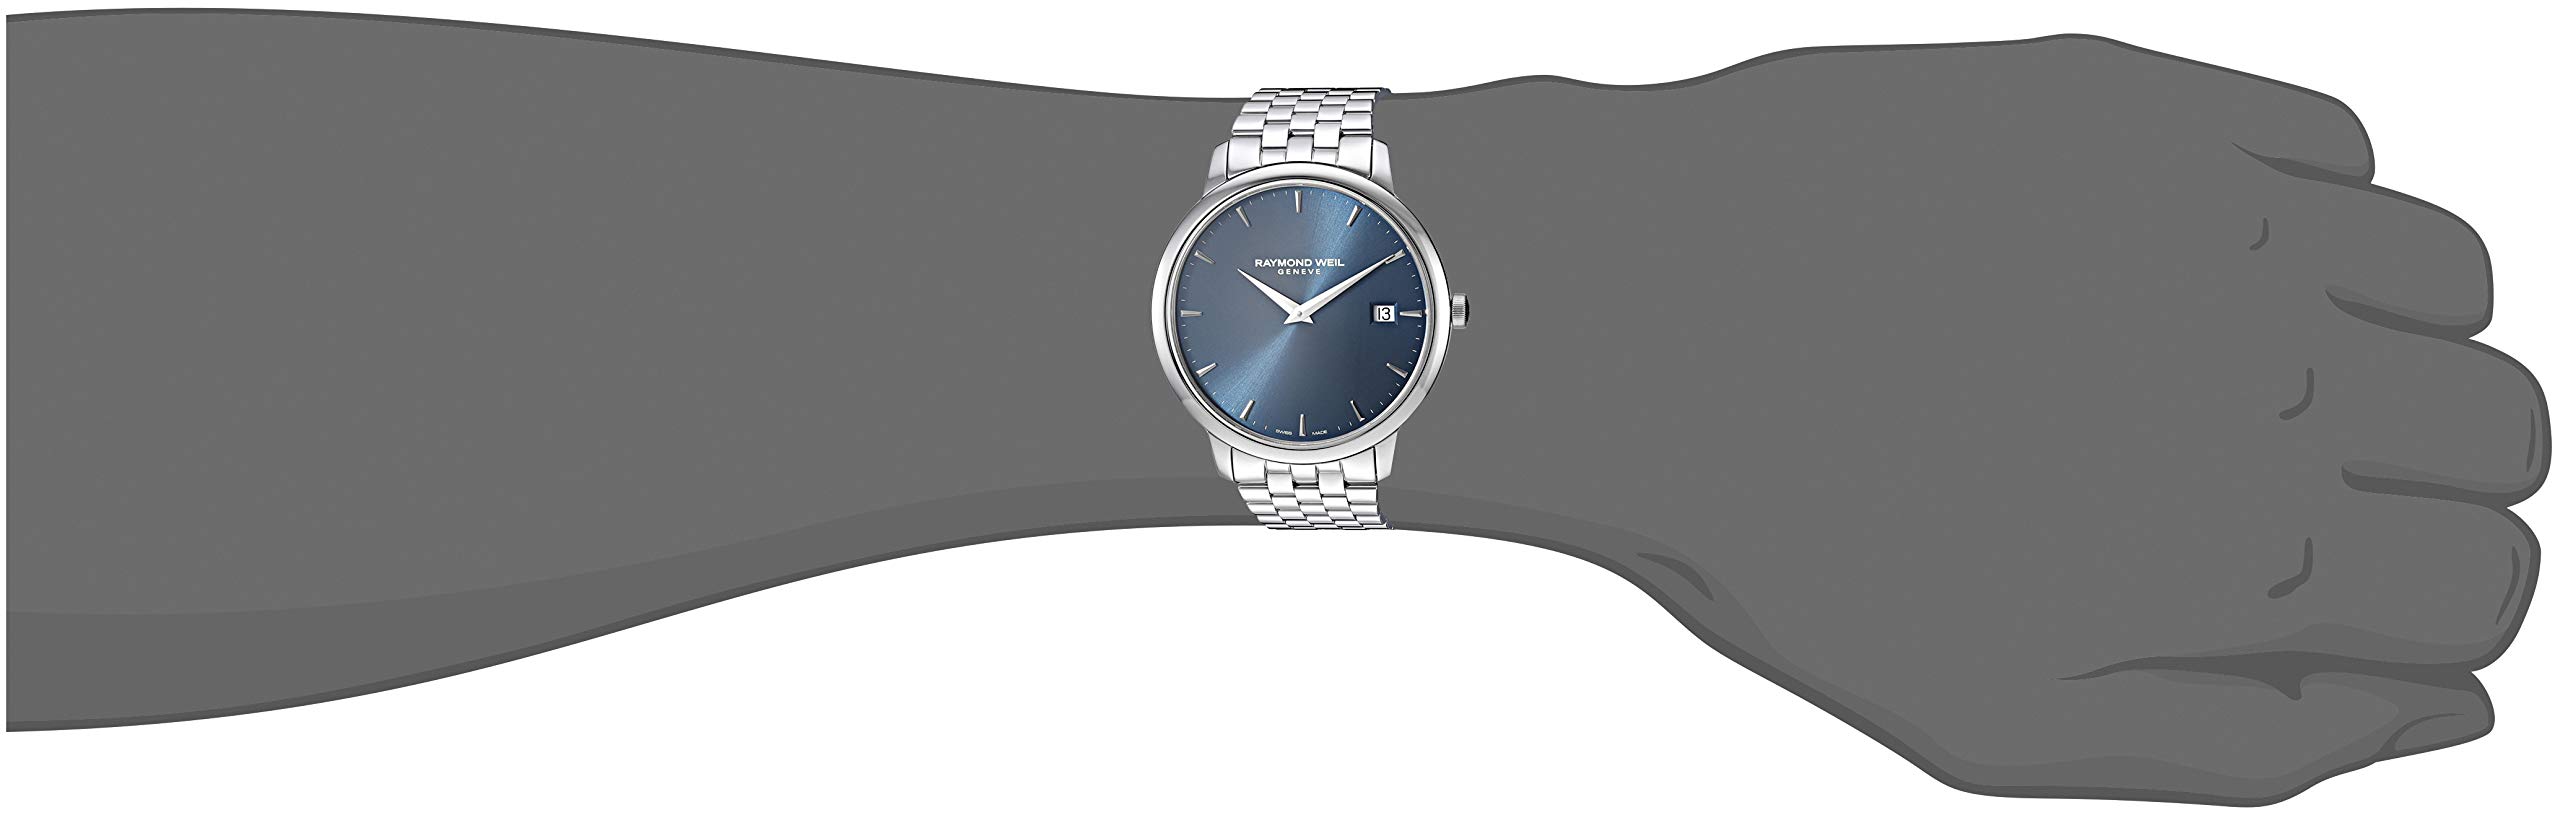 RAYMOND WEIL Men's 5588-ST-50001 Toccata Analog Display Quartz Silver Watch